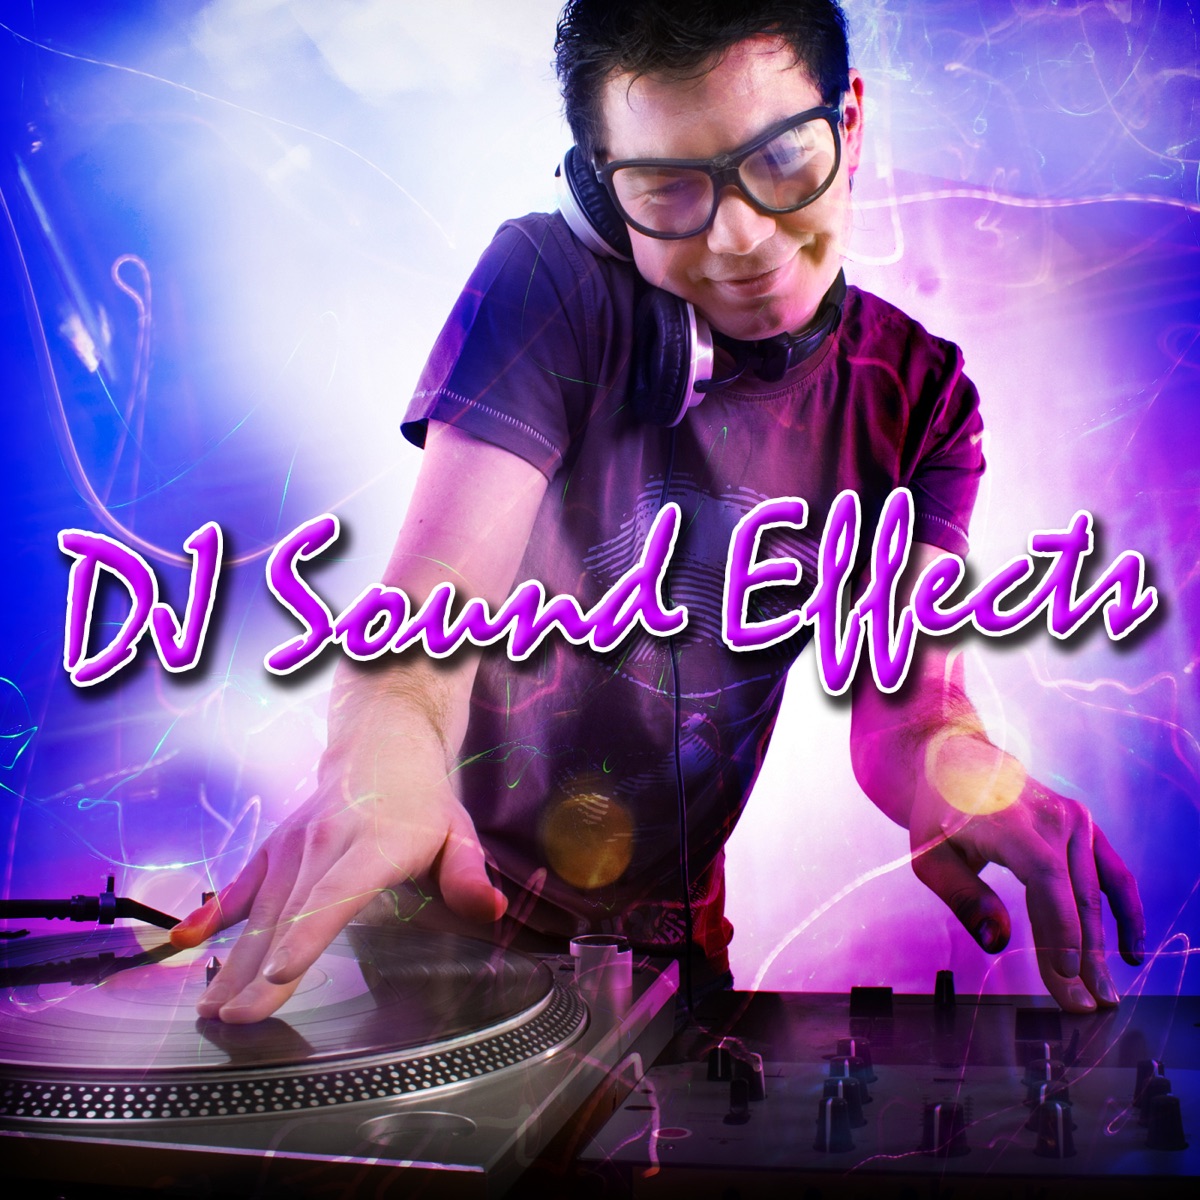 Dj Sound Effects - Album by Dr. Sound FX - Apple Music